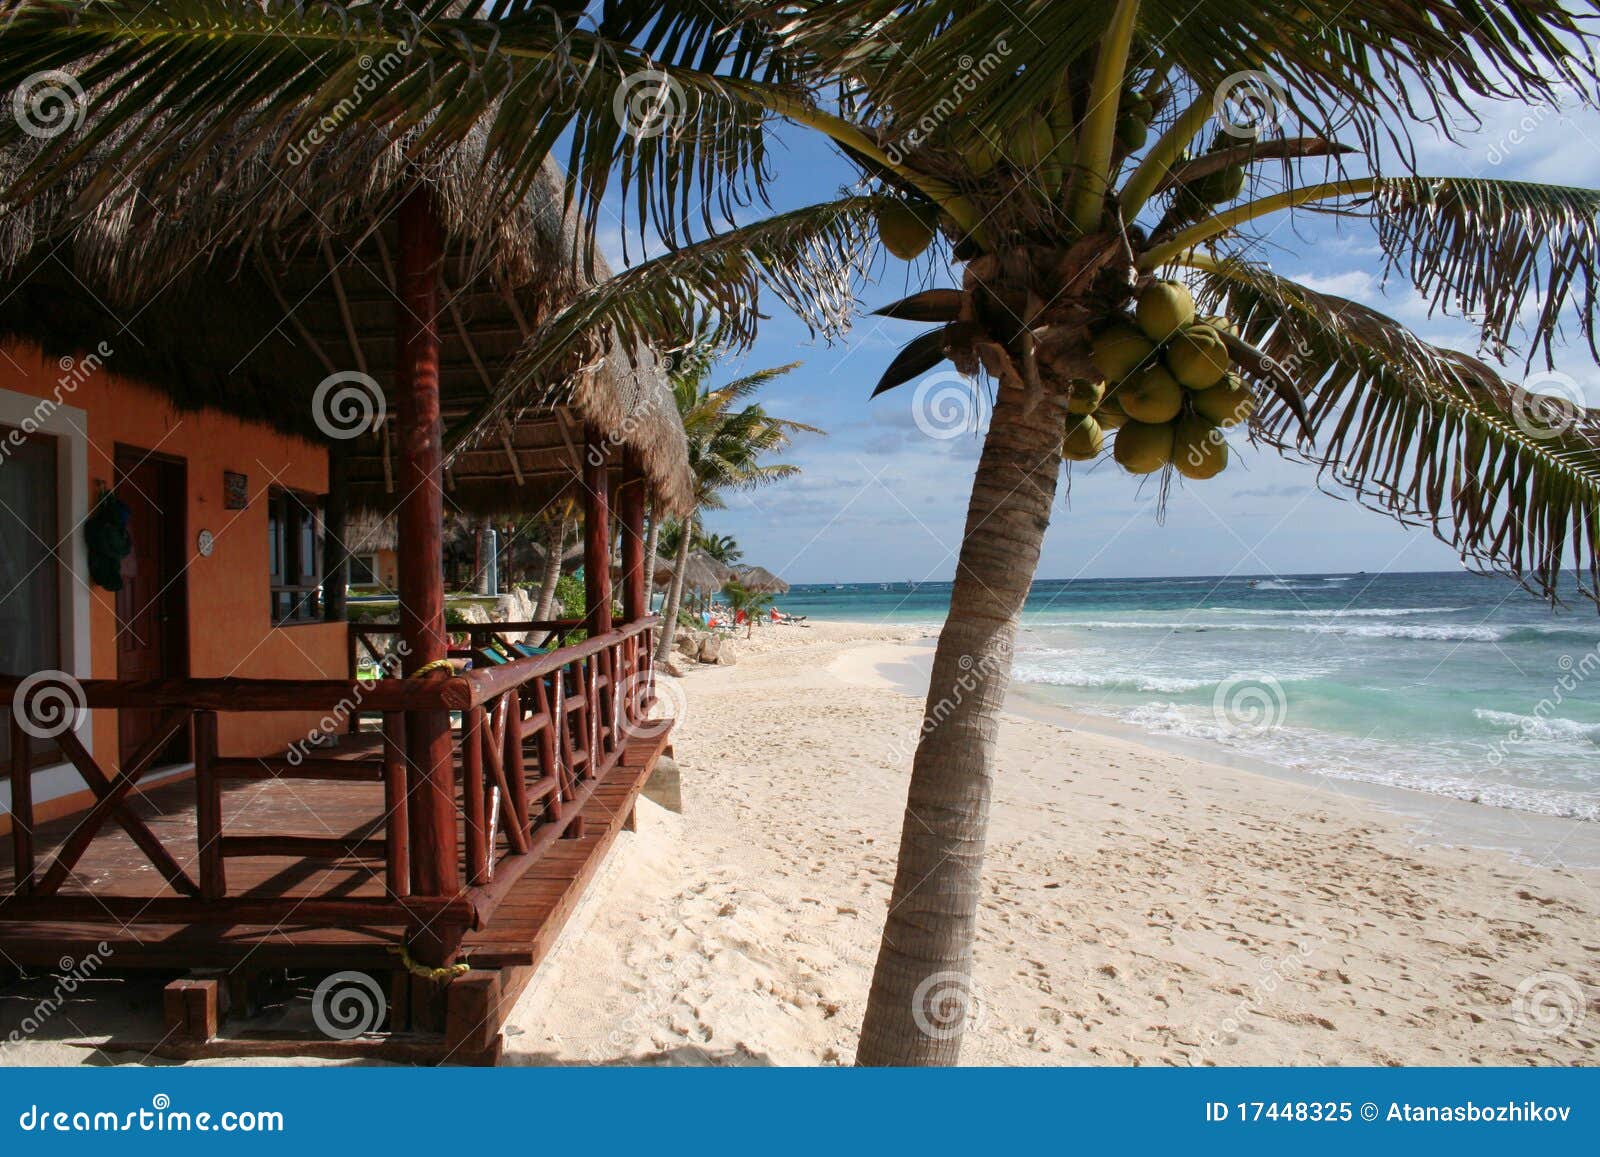 palapa with balcony in playa del carmen - mexico